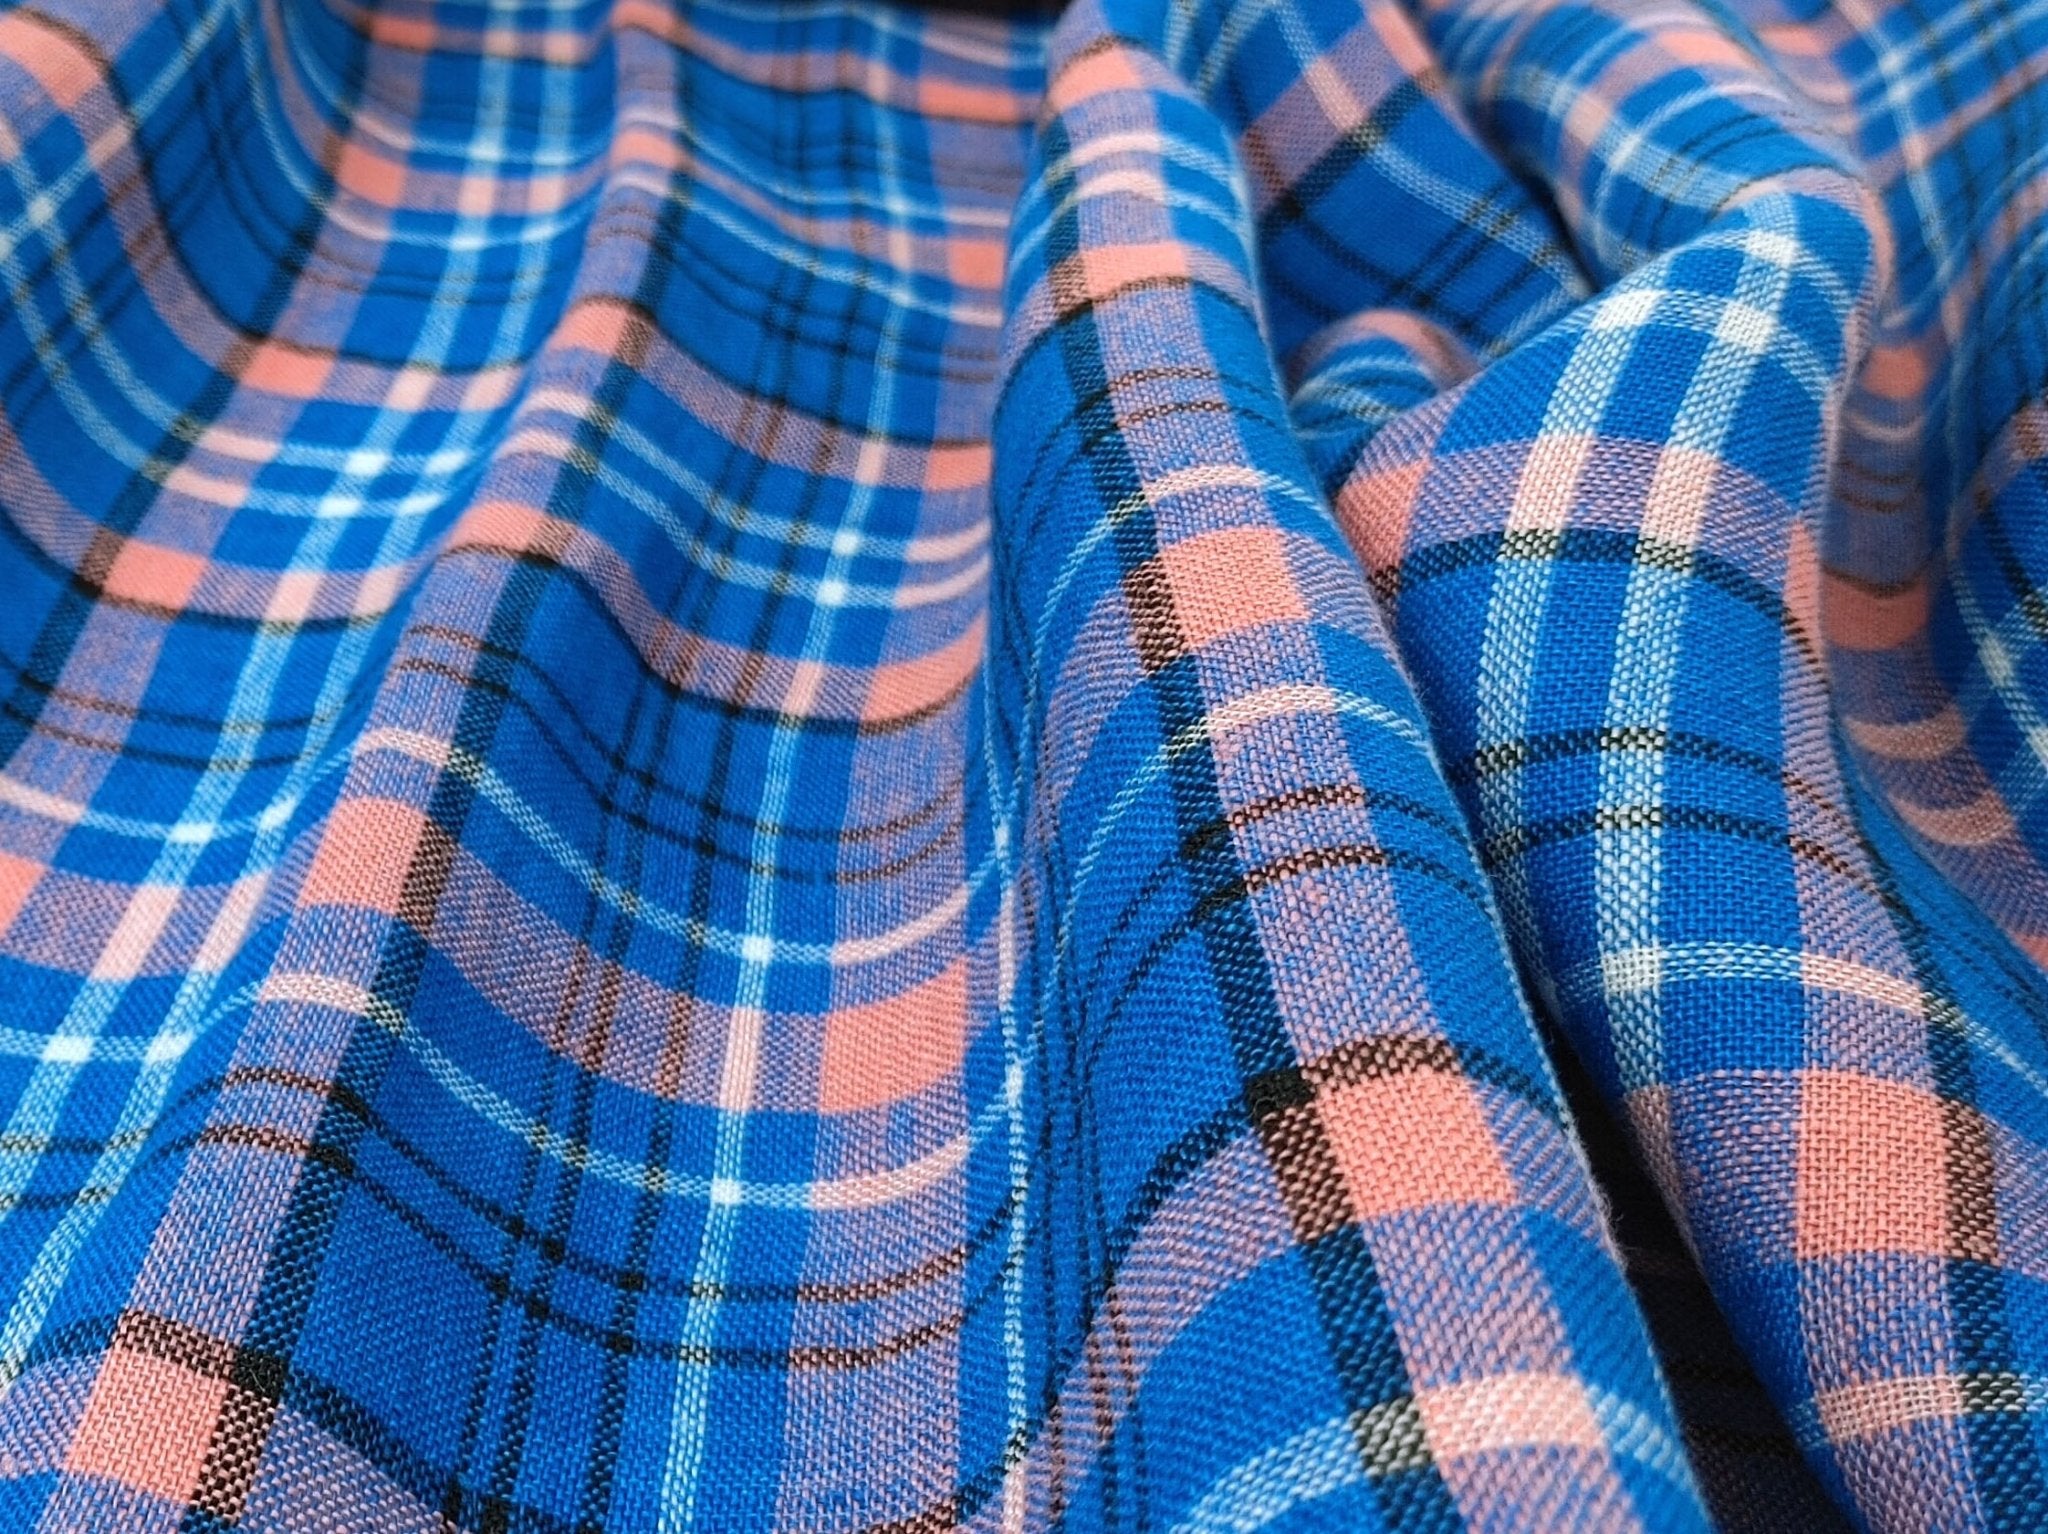 Contemporary Blue Tartan Plaid: 100% Linen Fabric, Medium-Light Weight 7570 - The Linen Lab - Blue